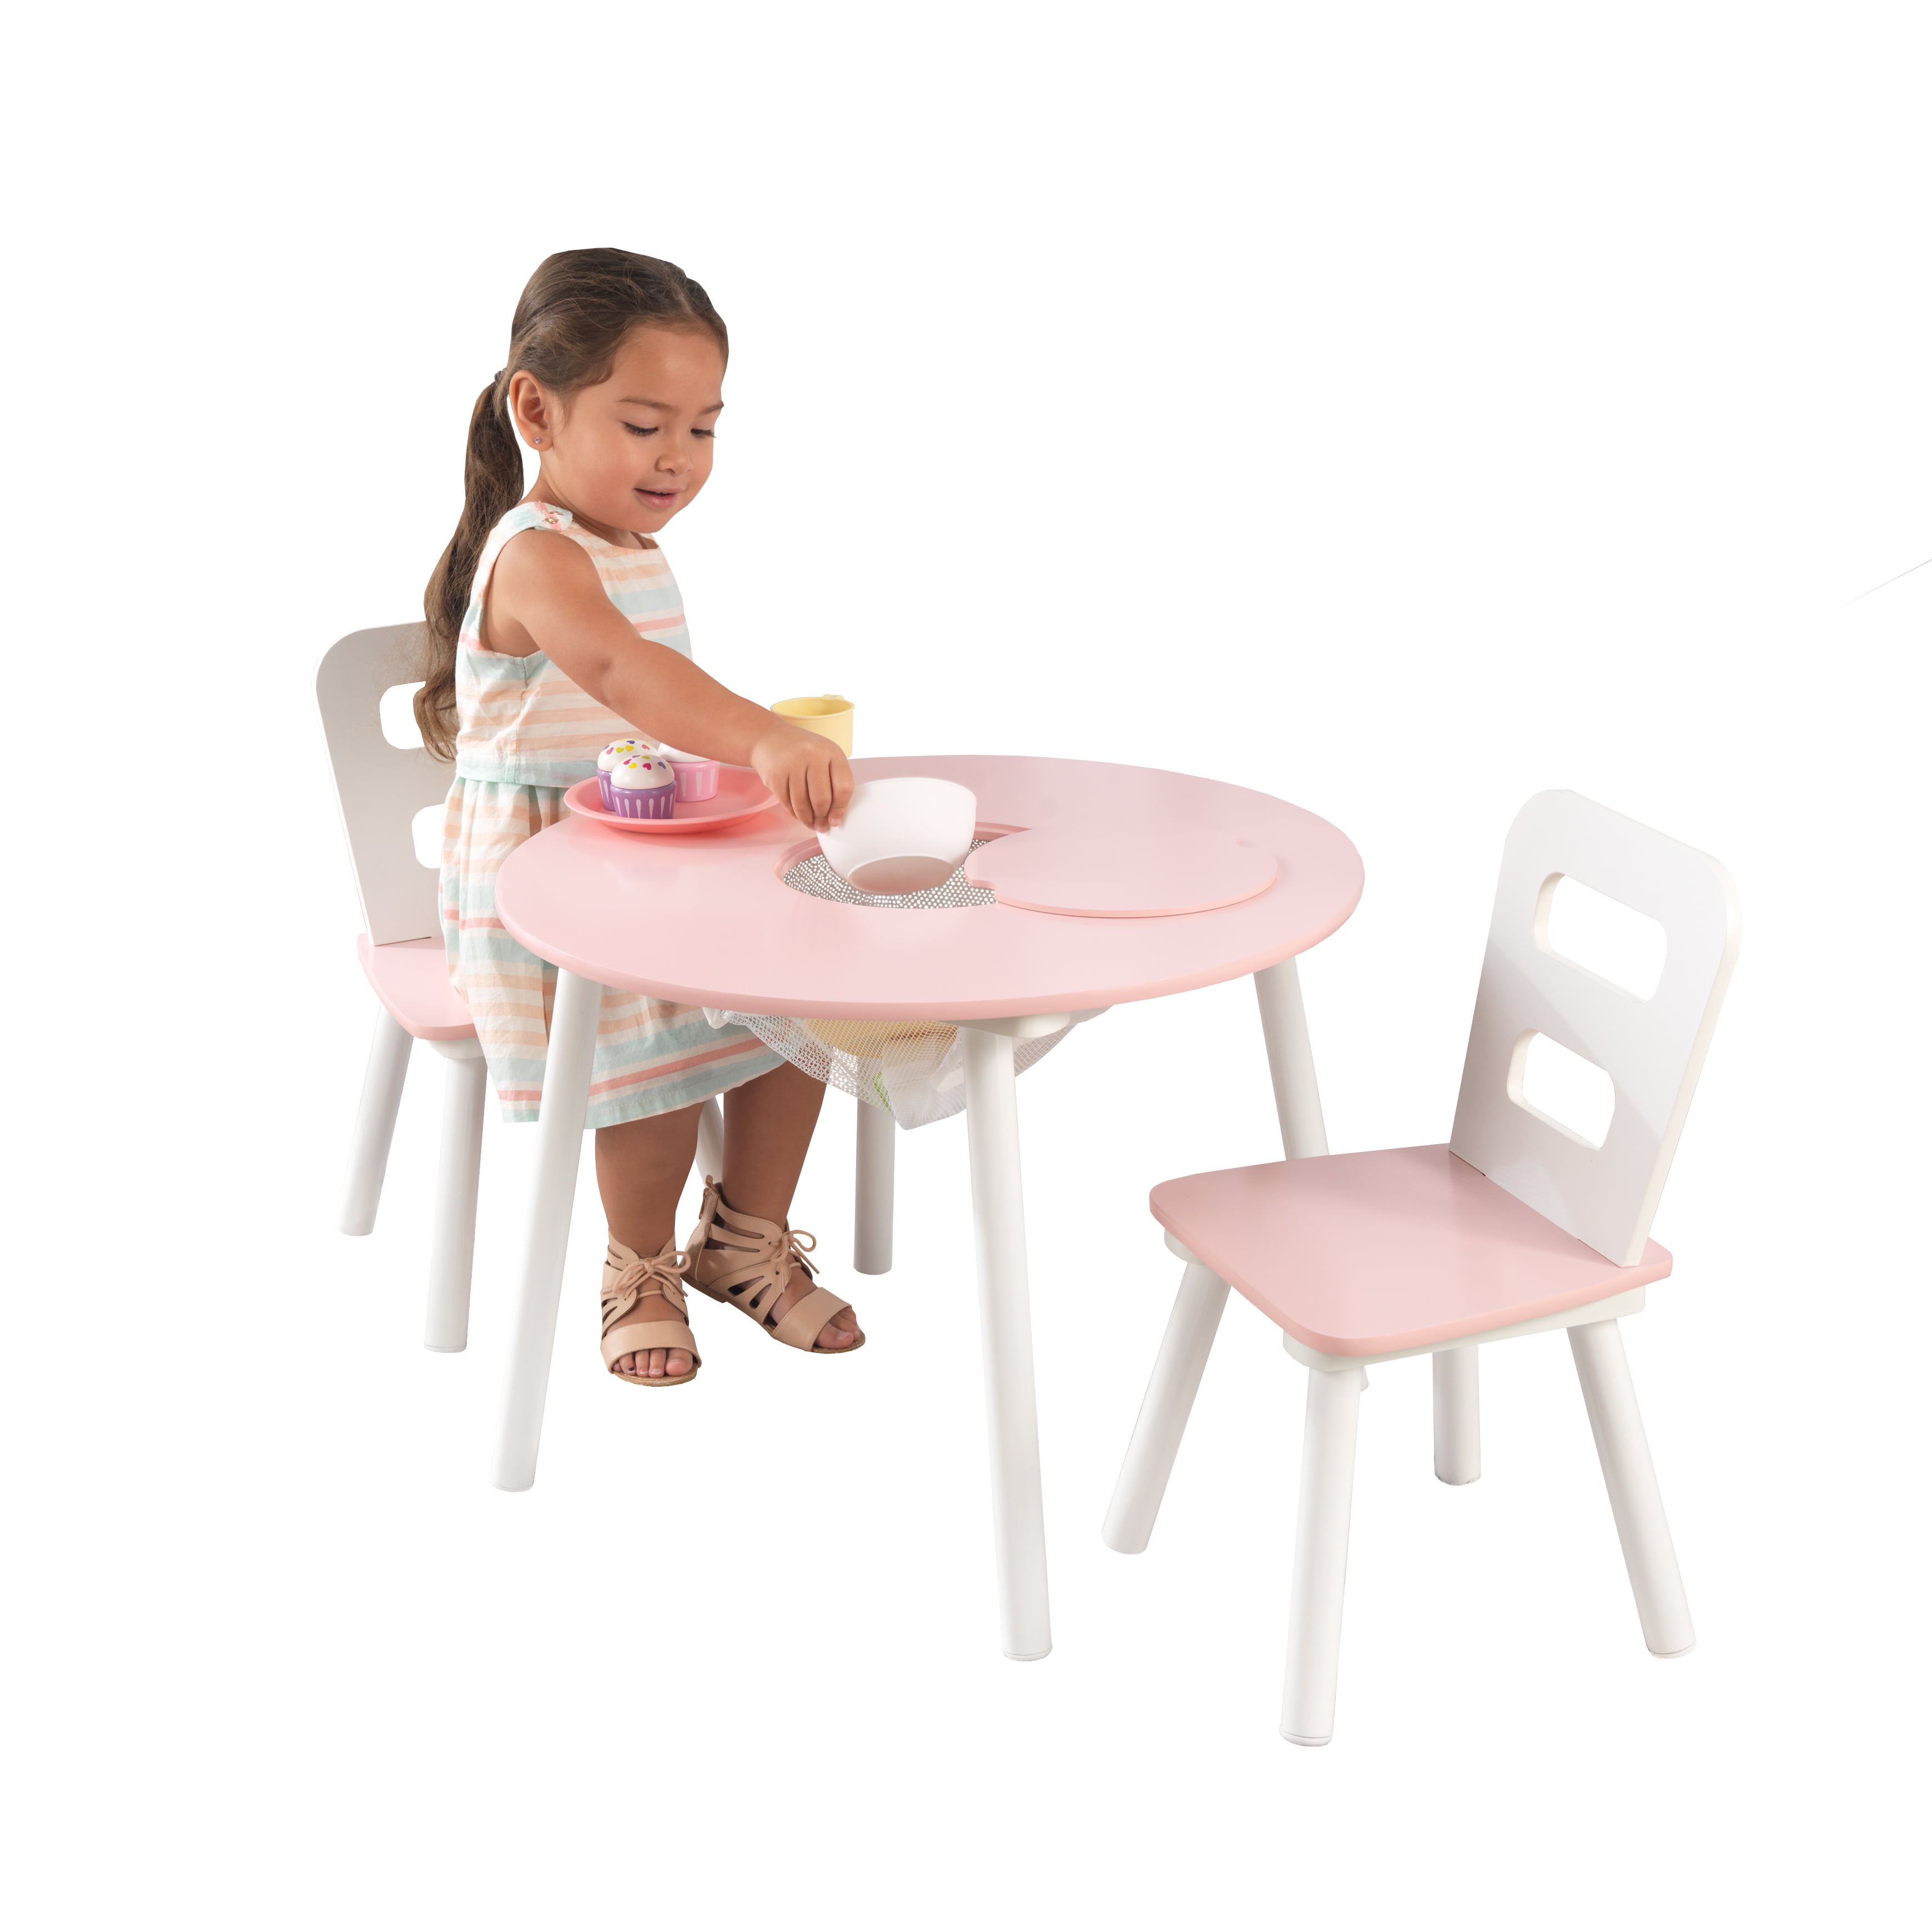 kidkraft round storage table & 2 chair set